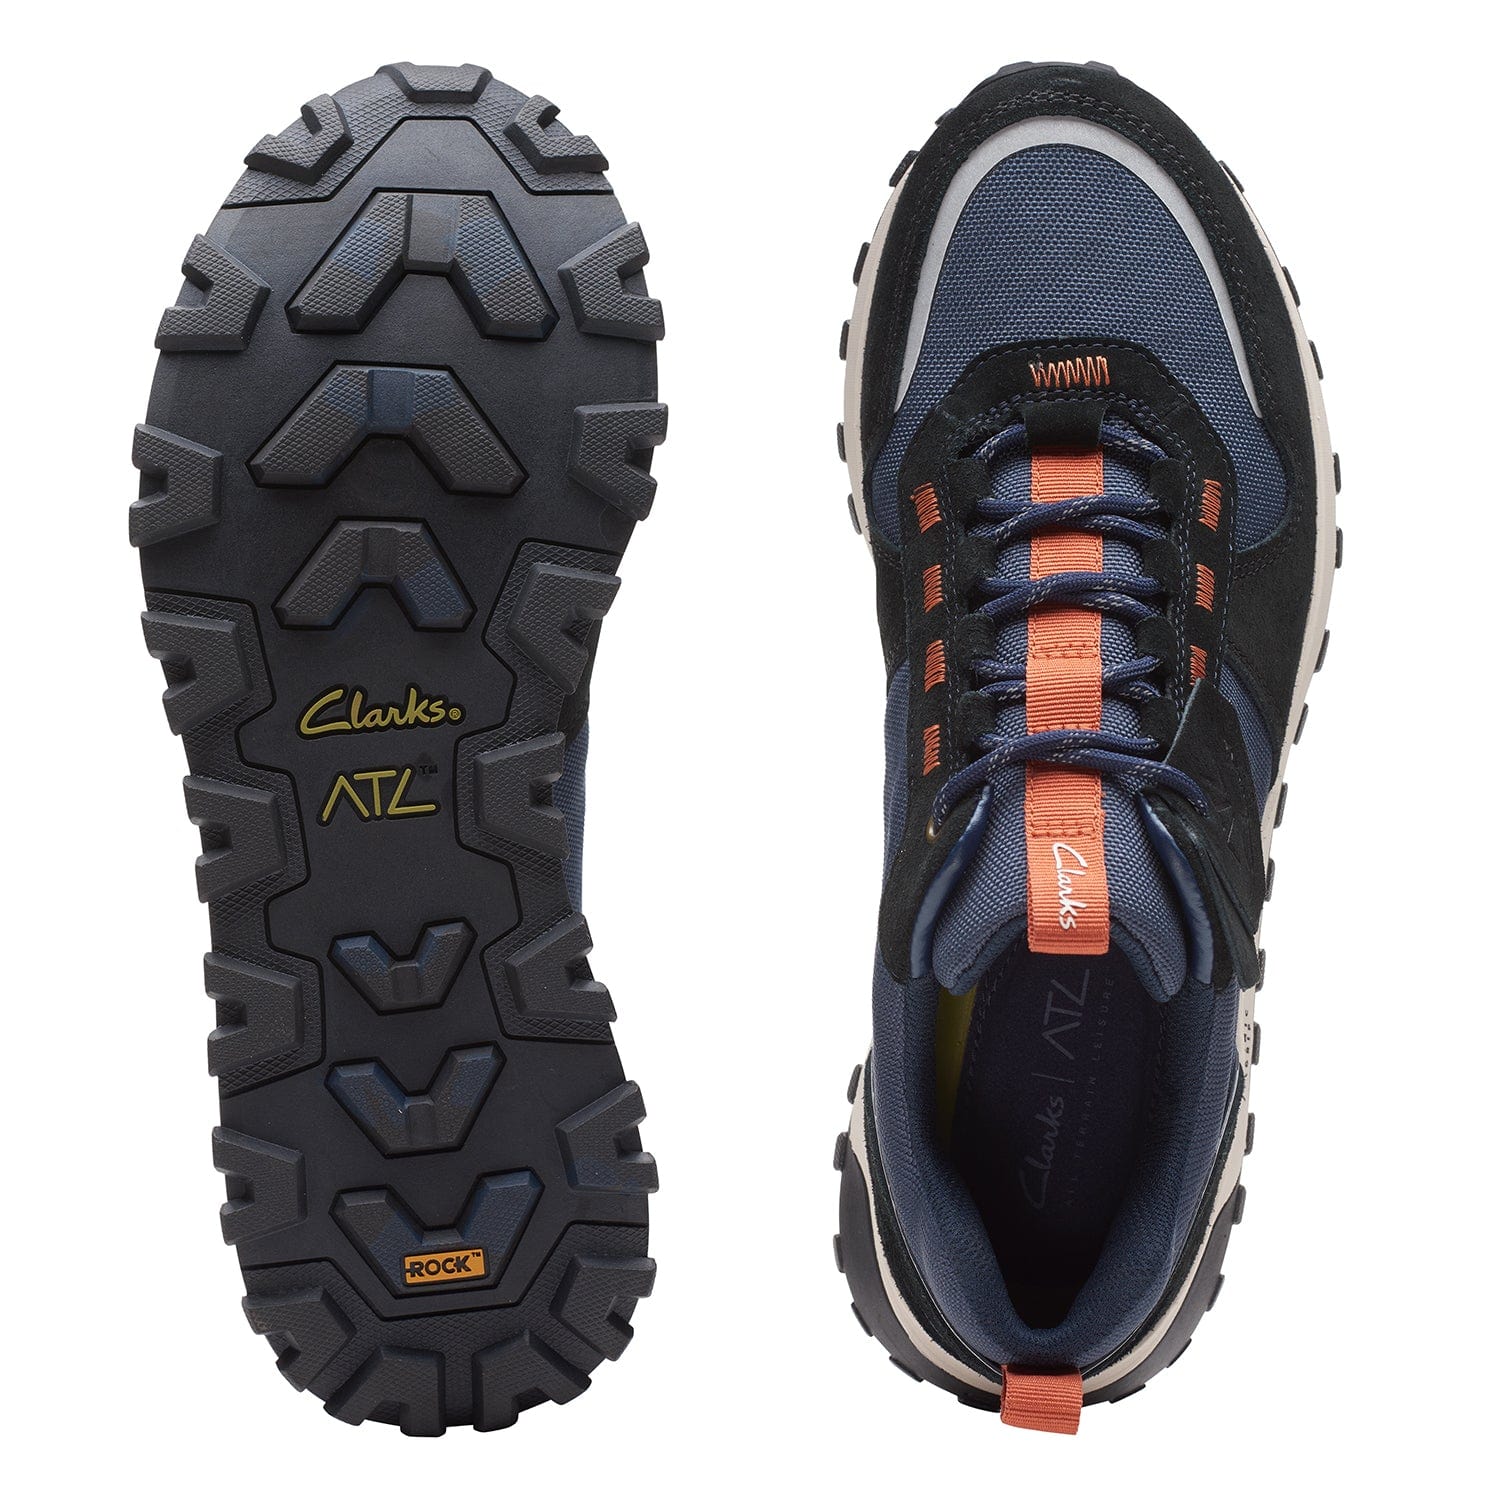 Clarks Atl Trek Walk - Shoes - Navy Combi - 261657397 - G Width (Standard Fit)